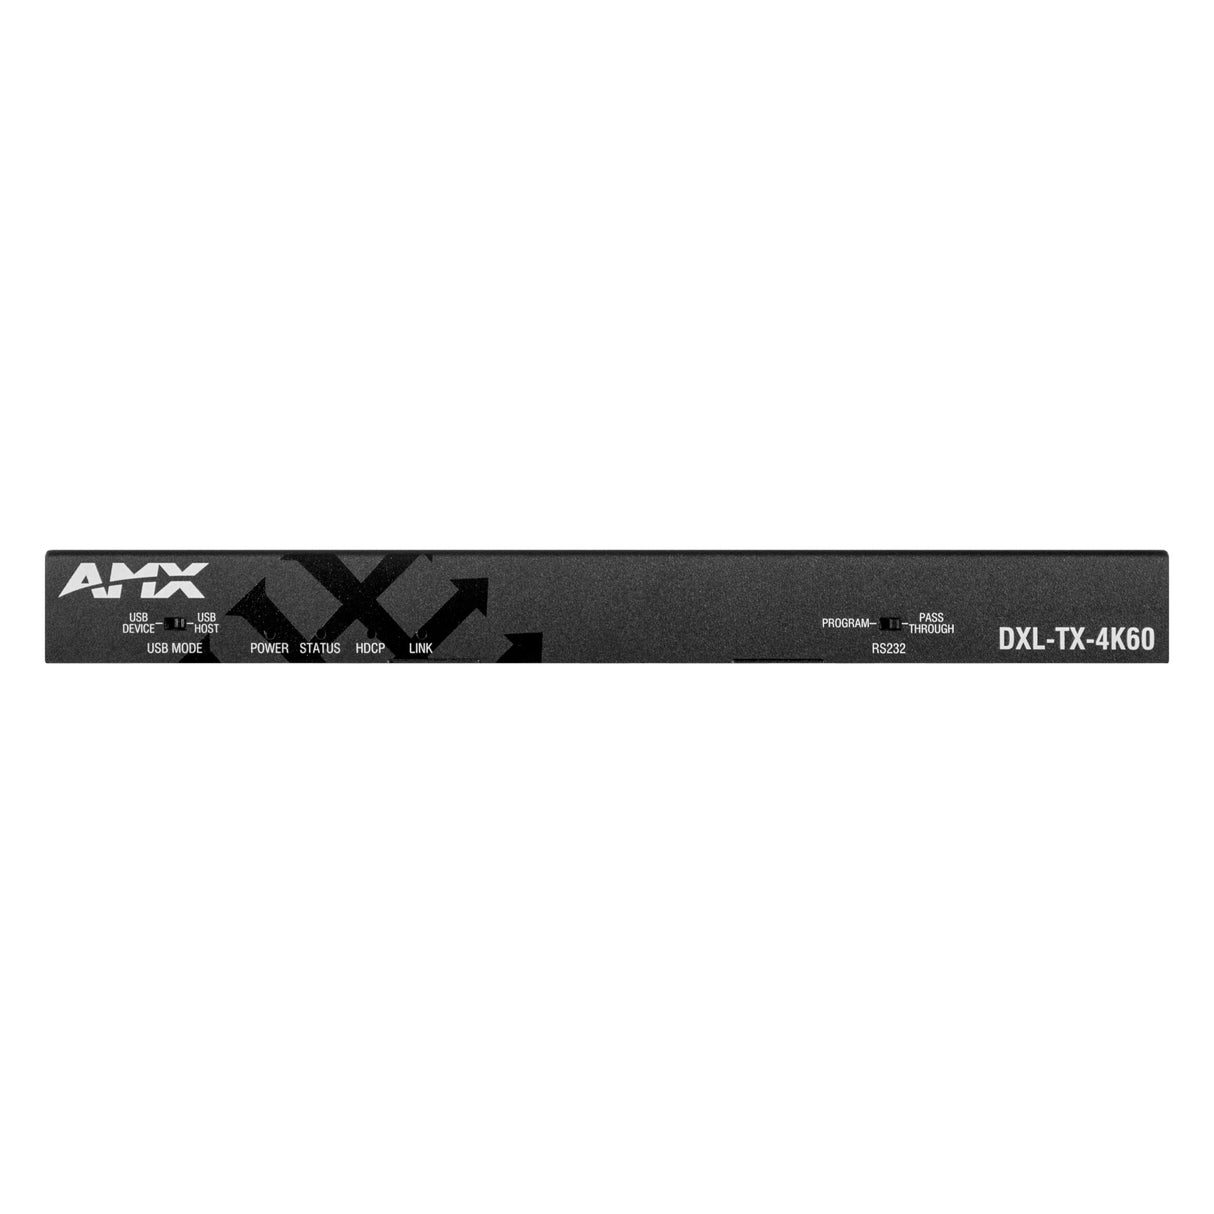 AMX DXL-TX-4K60 DXLite 4K60 4:4:4 HDBaseT Transmitter